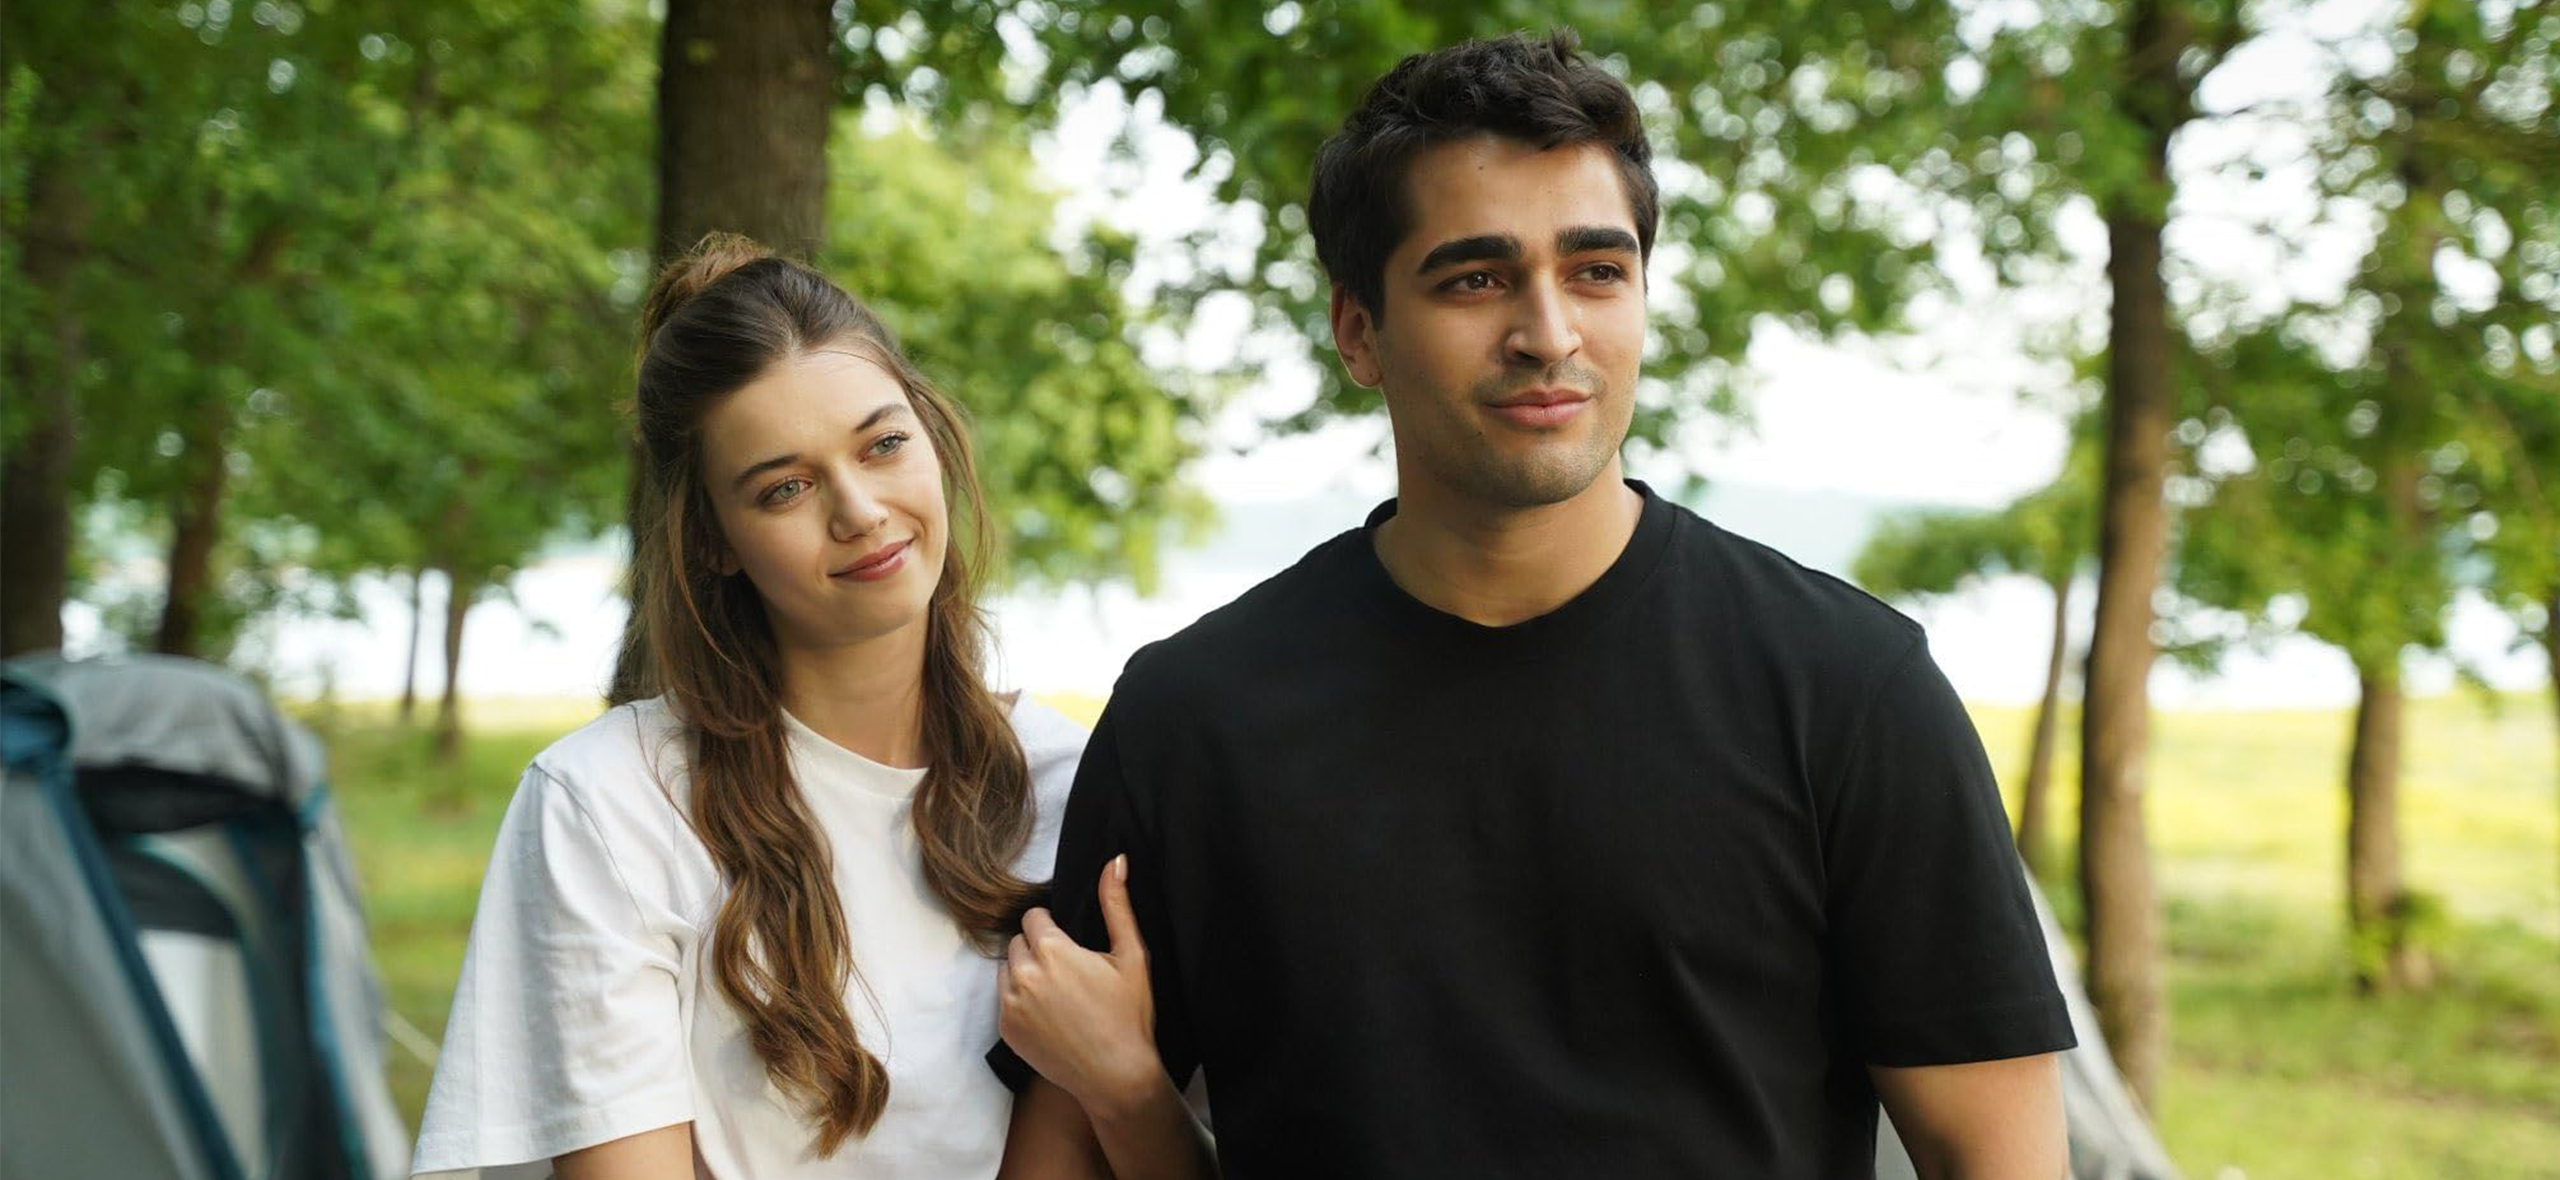 «Зимородок» — стоит ли смотреть популярный турецкий сериал о вынужденной свадьбе